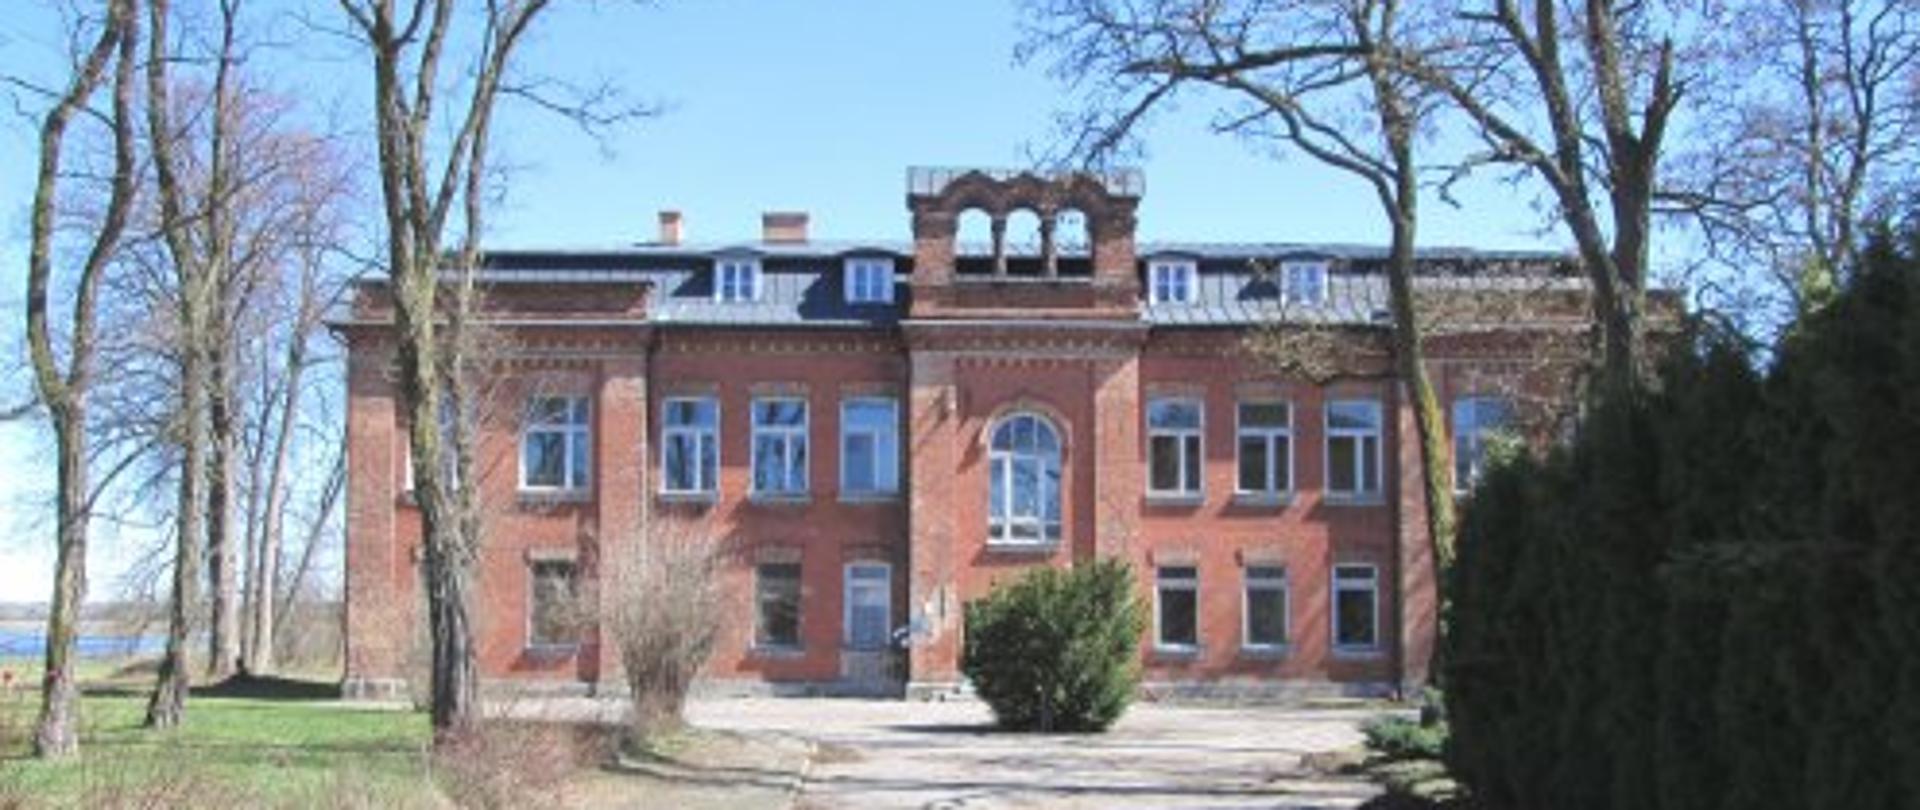 Filia klasztoru w Wirowie (pierwotnie mieszcząca szkołę, internat) 1904 r. Mołożew